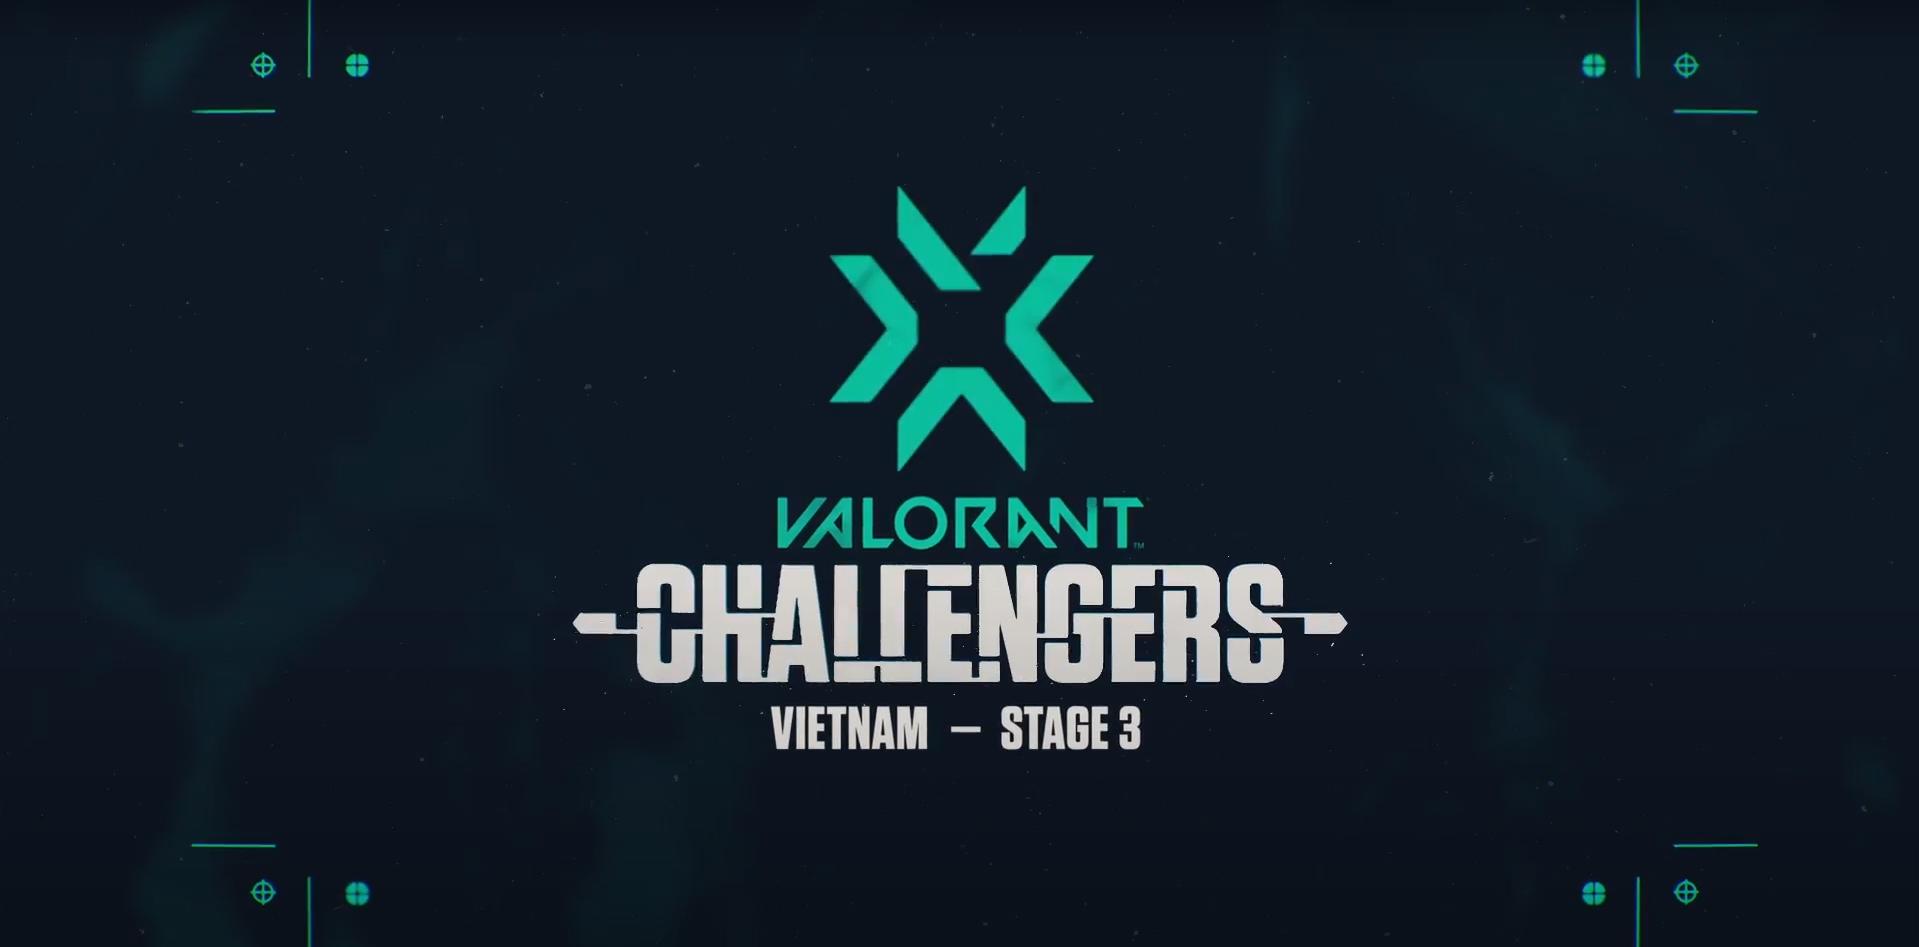 Mở đăng ký giải VALORANT Champions Tour: Việt Nam Stage 3 Challengers 1 - Ảnh 1.